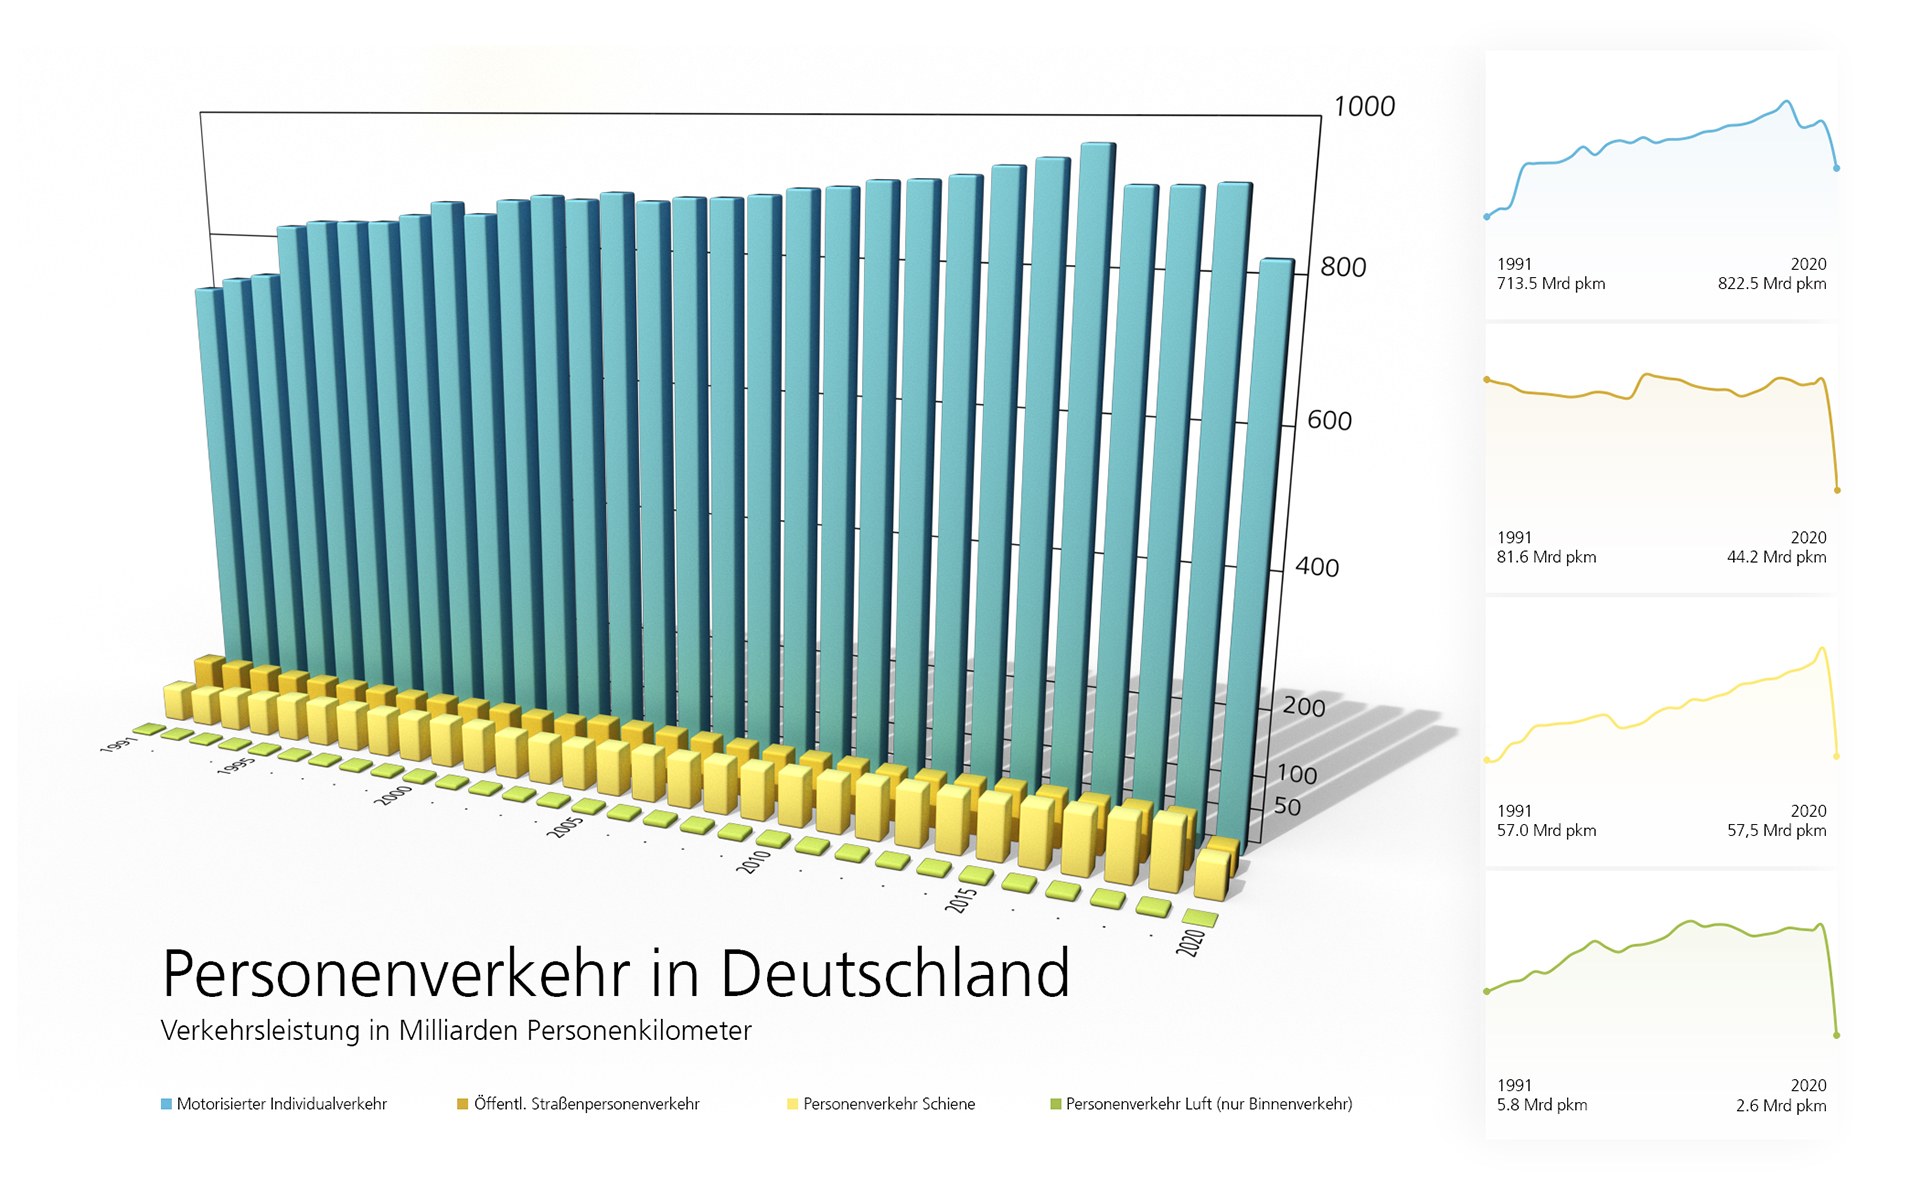 Passenger transport in Germany – traffic volume in billions of passenger kilometres